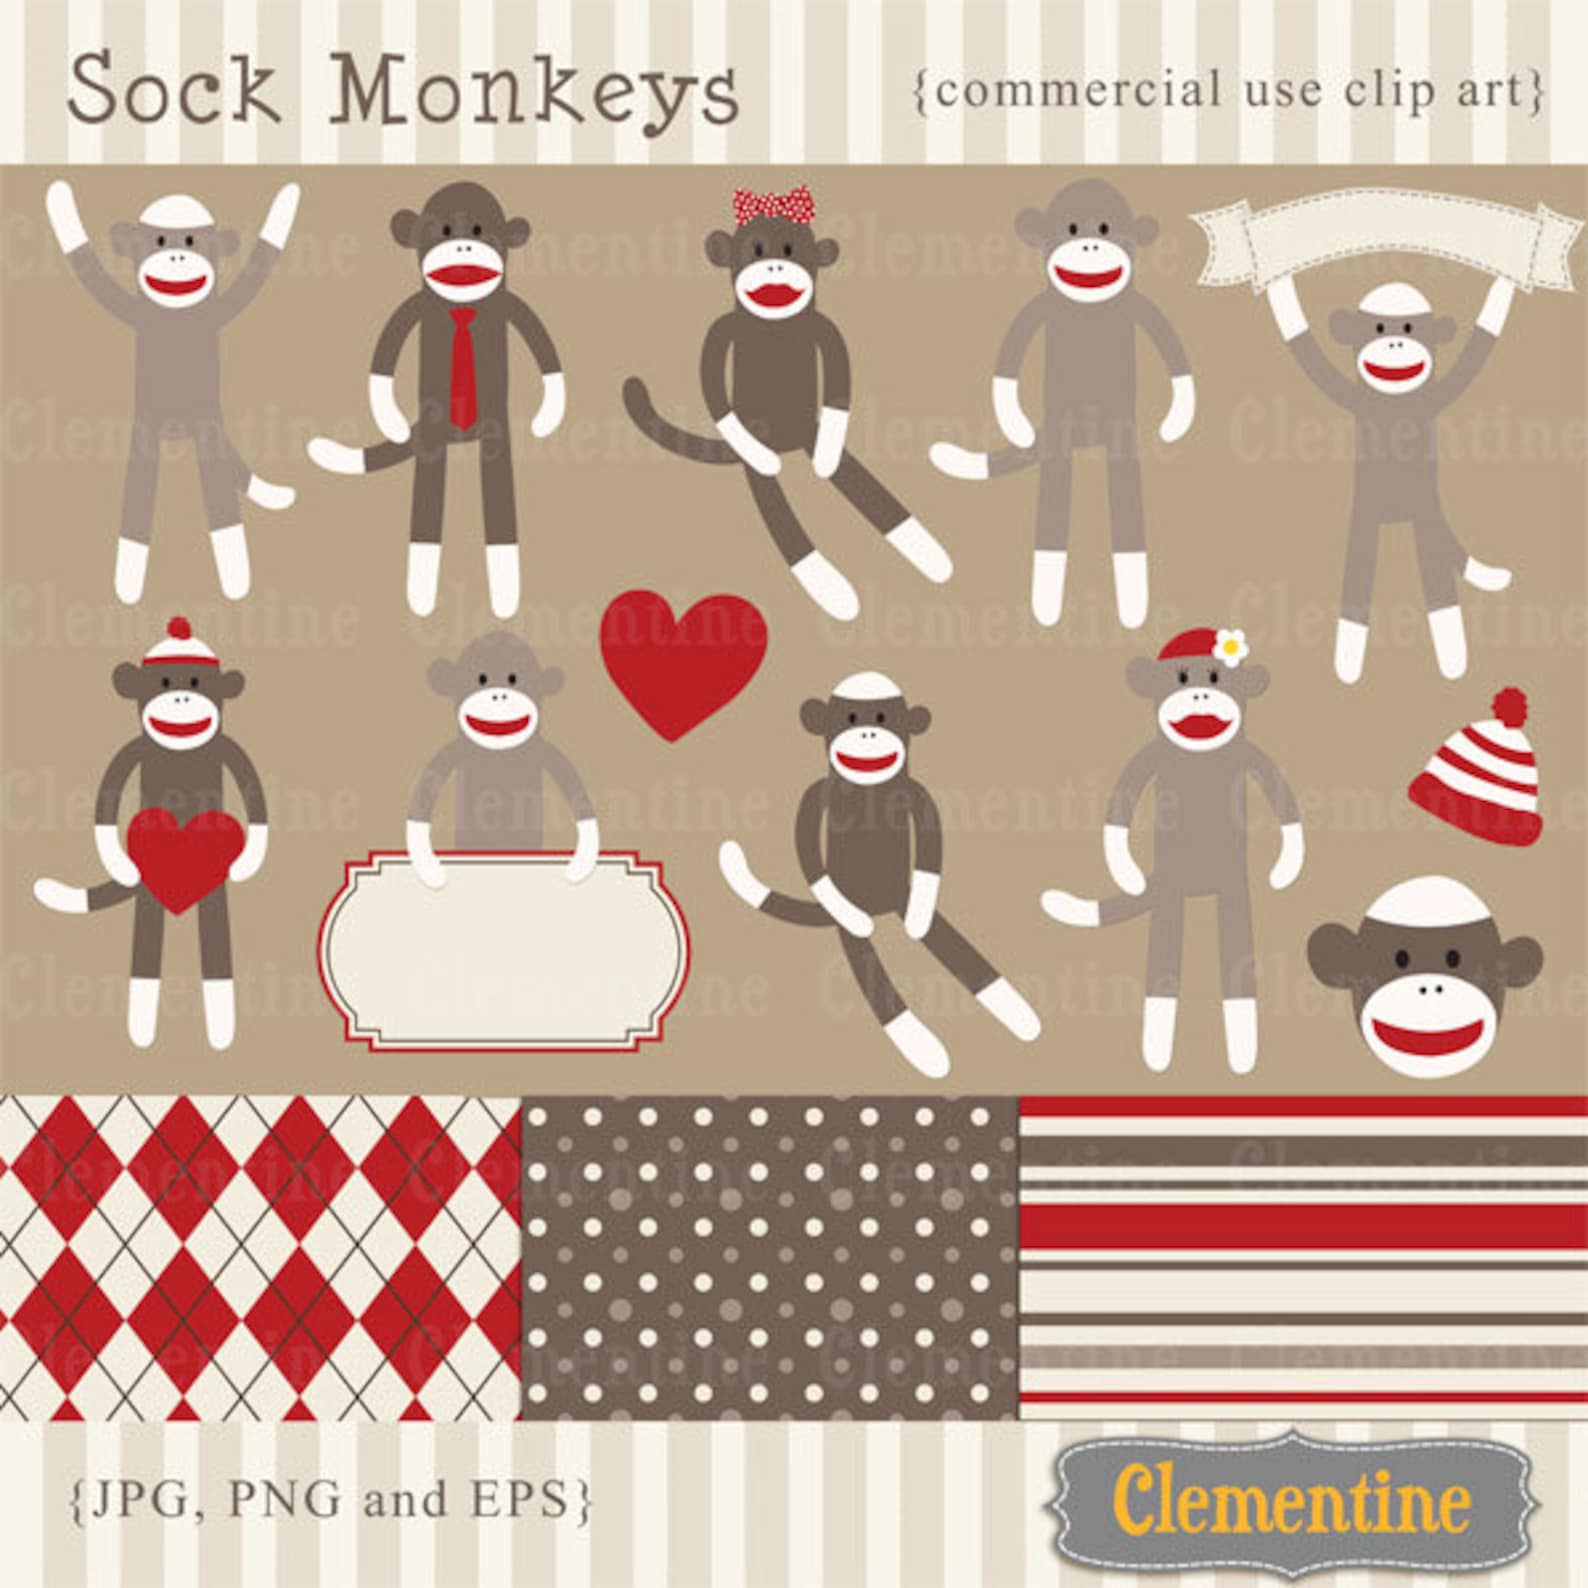 Sock Monkey Clip Art Images Sock Monkey Clipart Sock Monkey Etsy